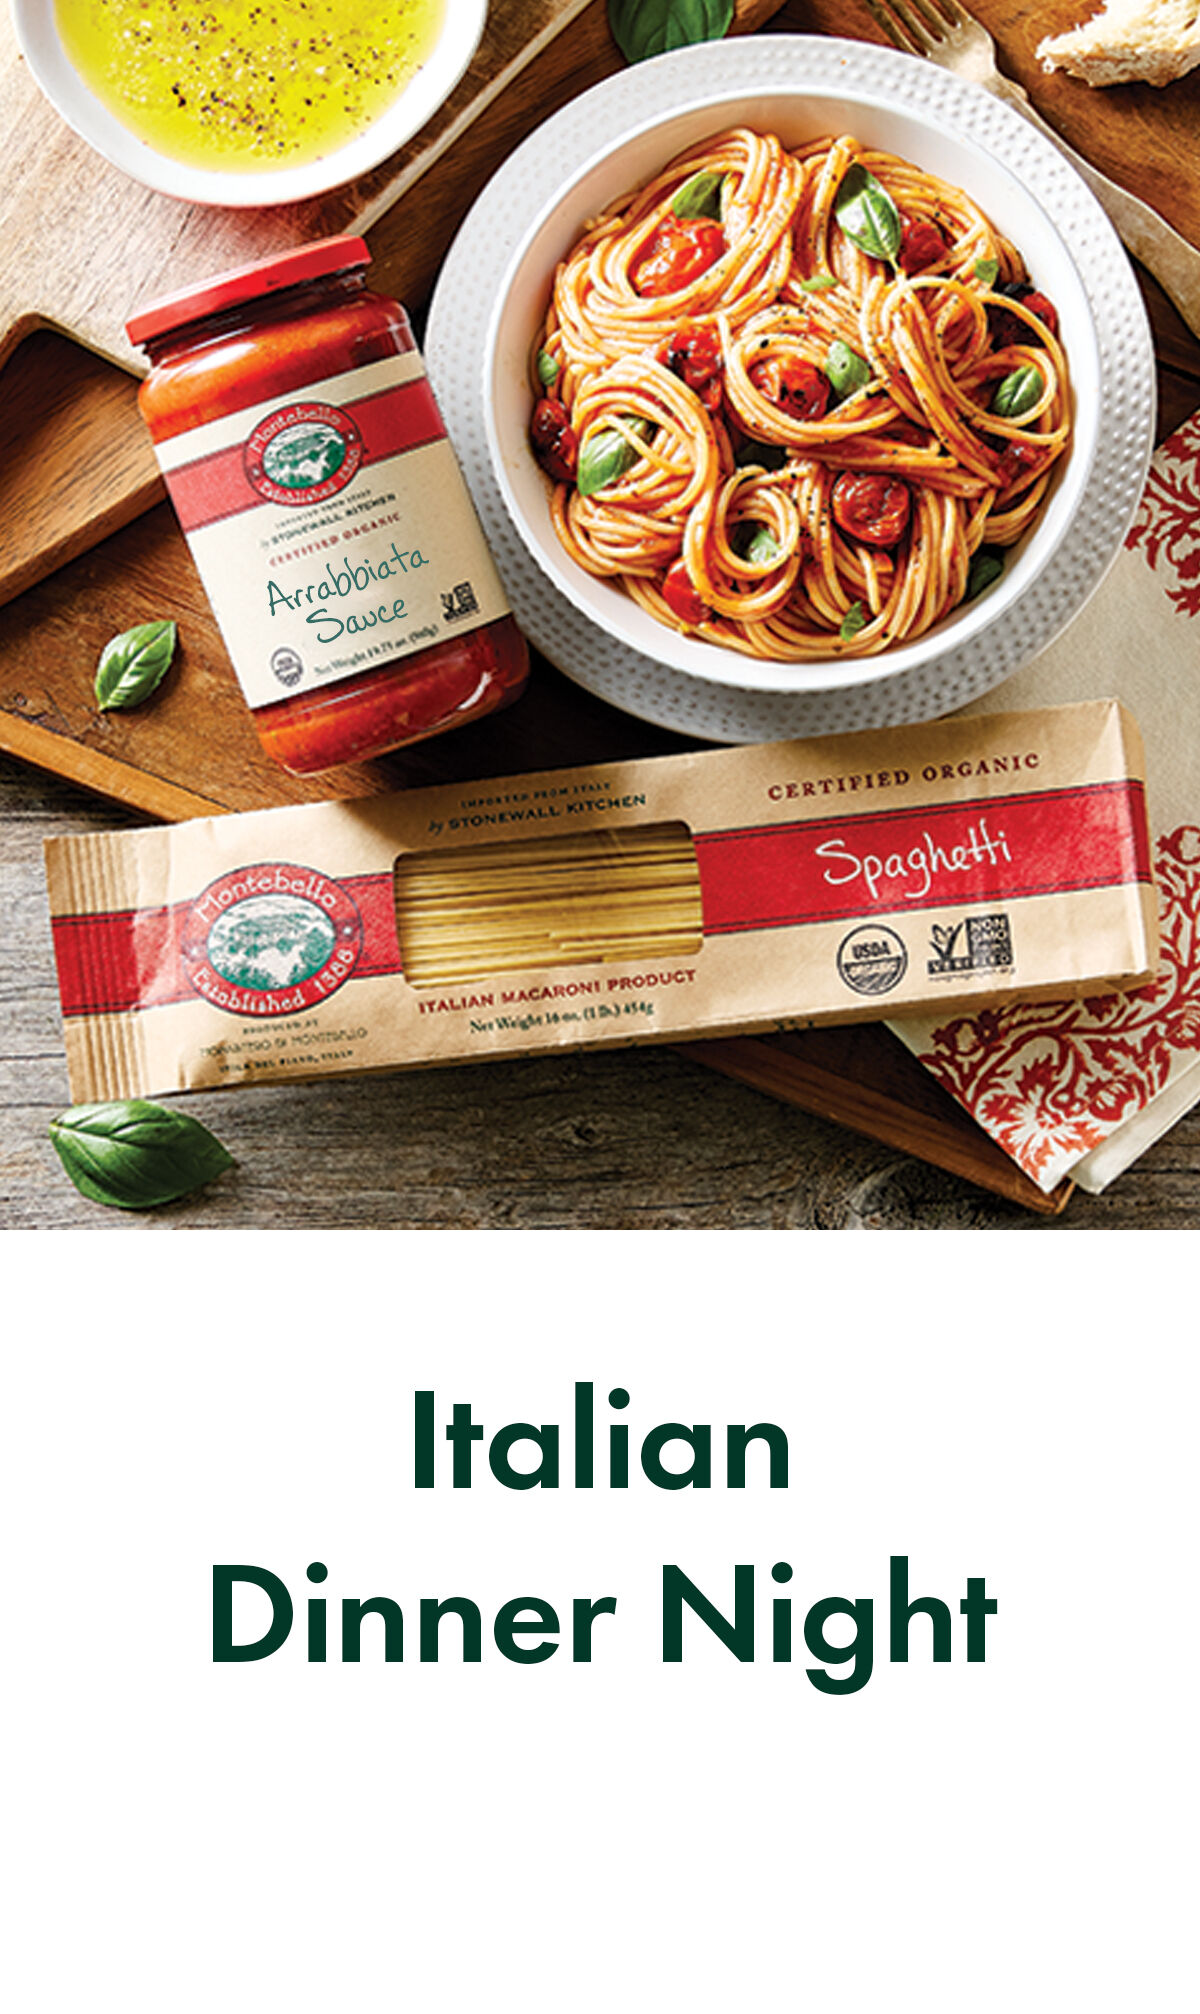 Italian Dinner Night